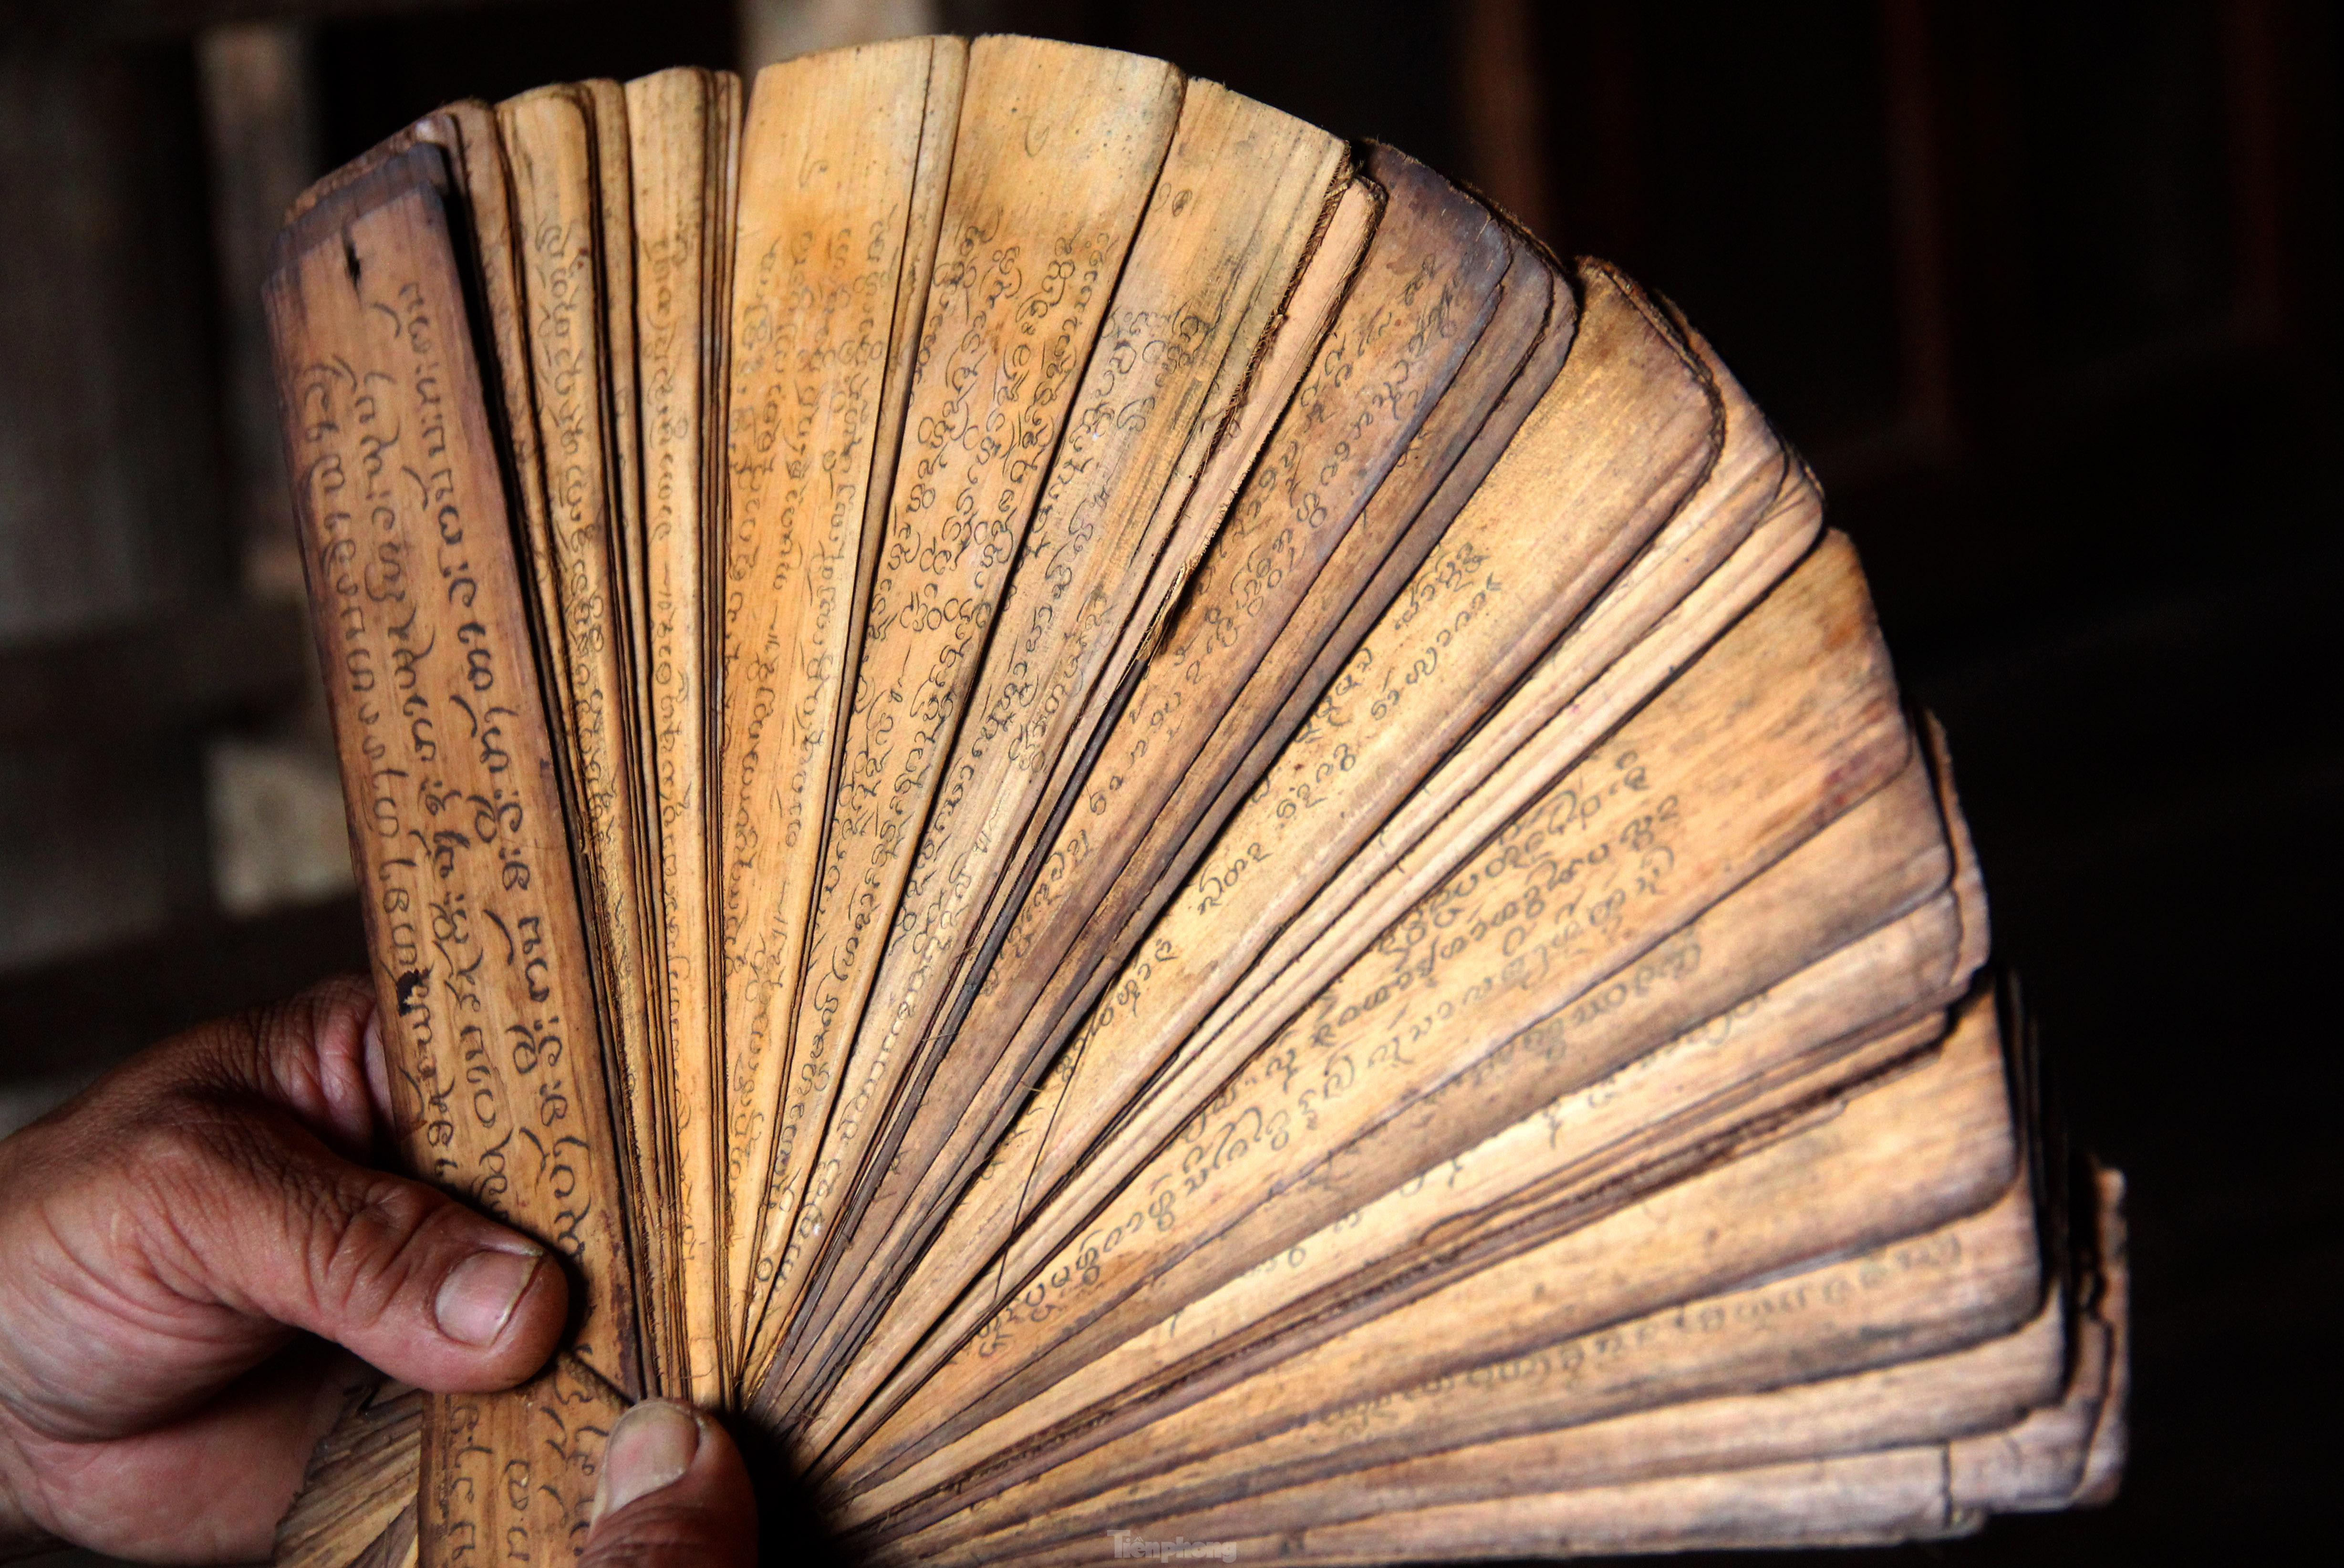 Độc đáo sách cổ bằng lá cây được lưu truyền hơn 200 năm ở xứ Nghệ